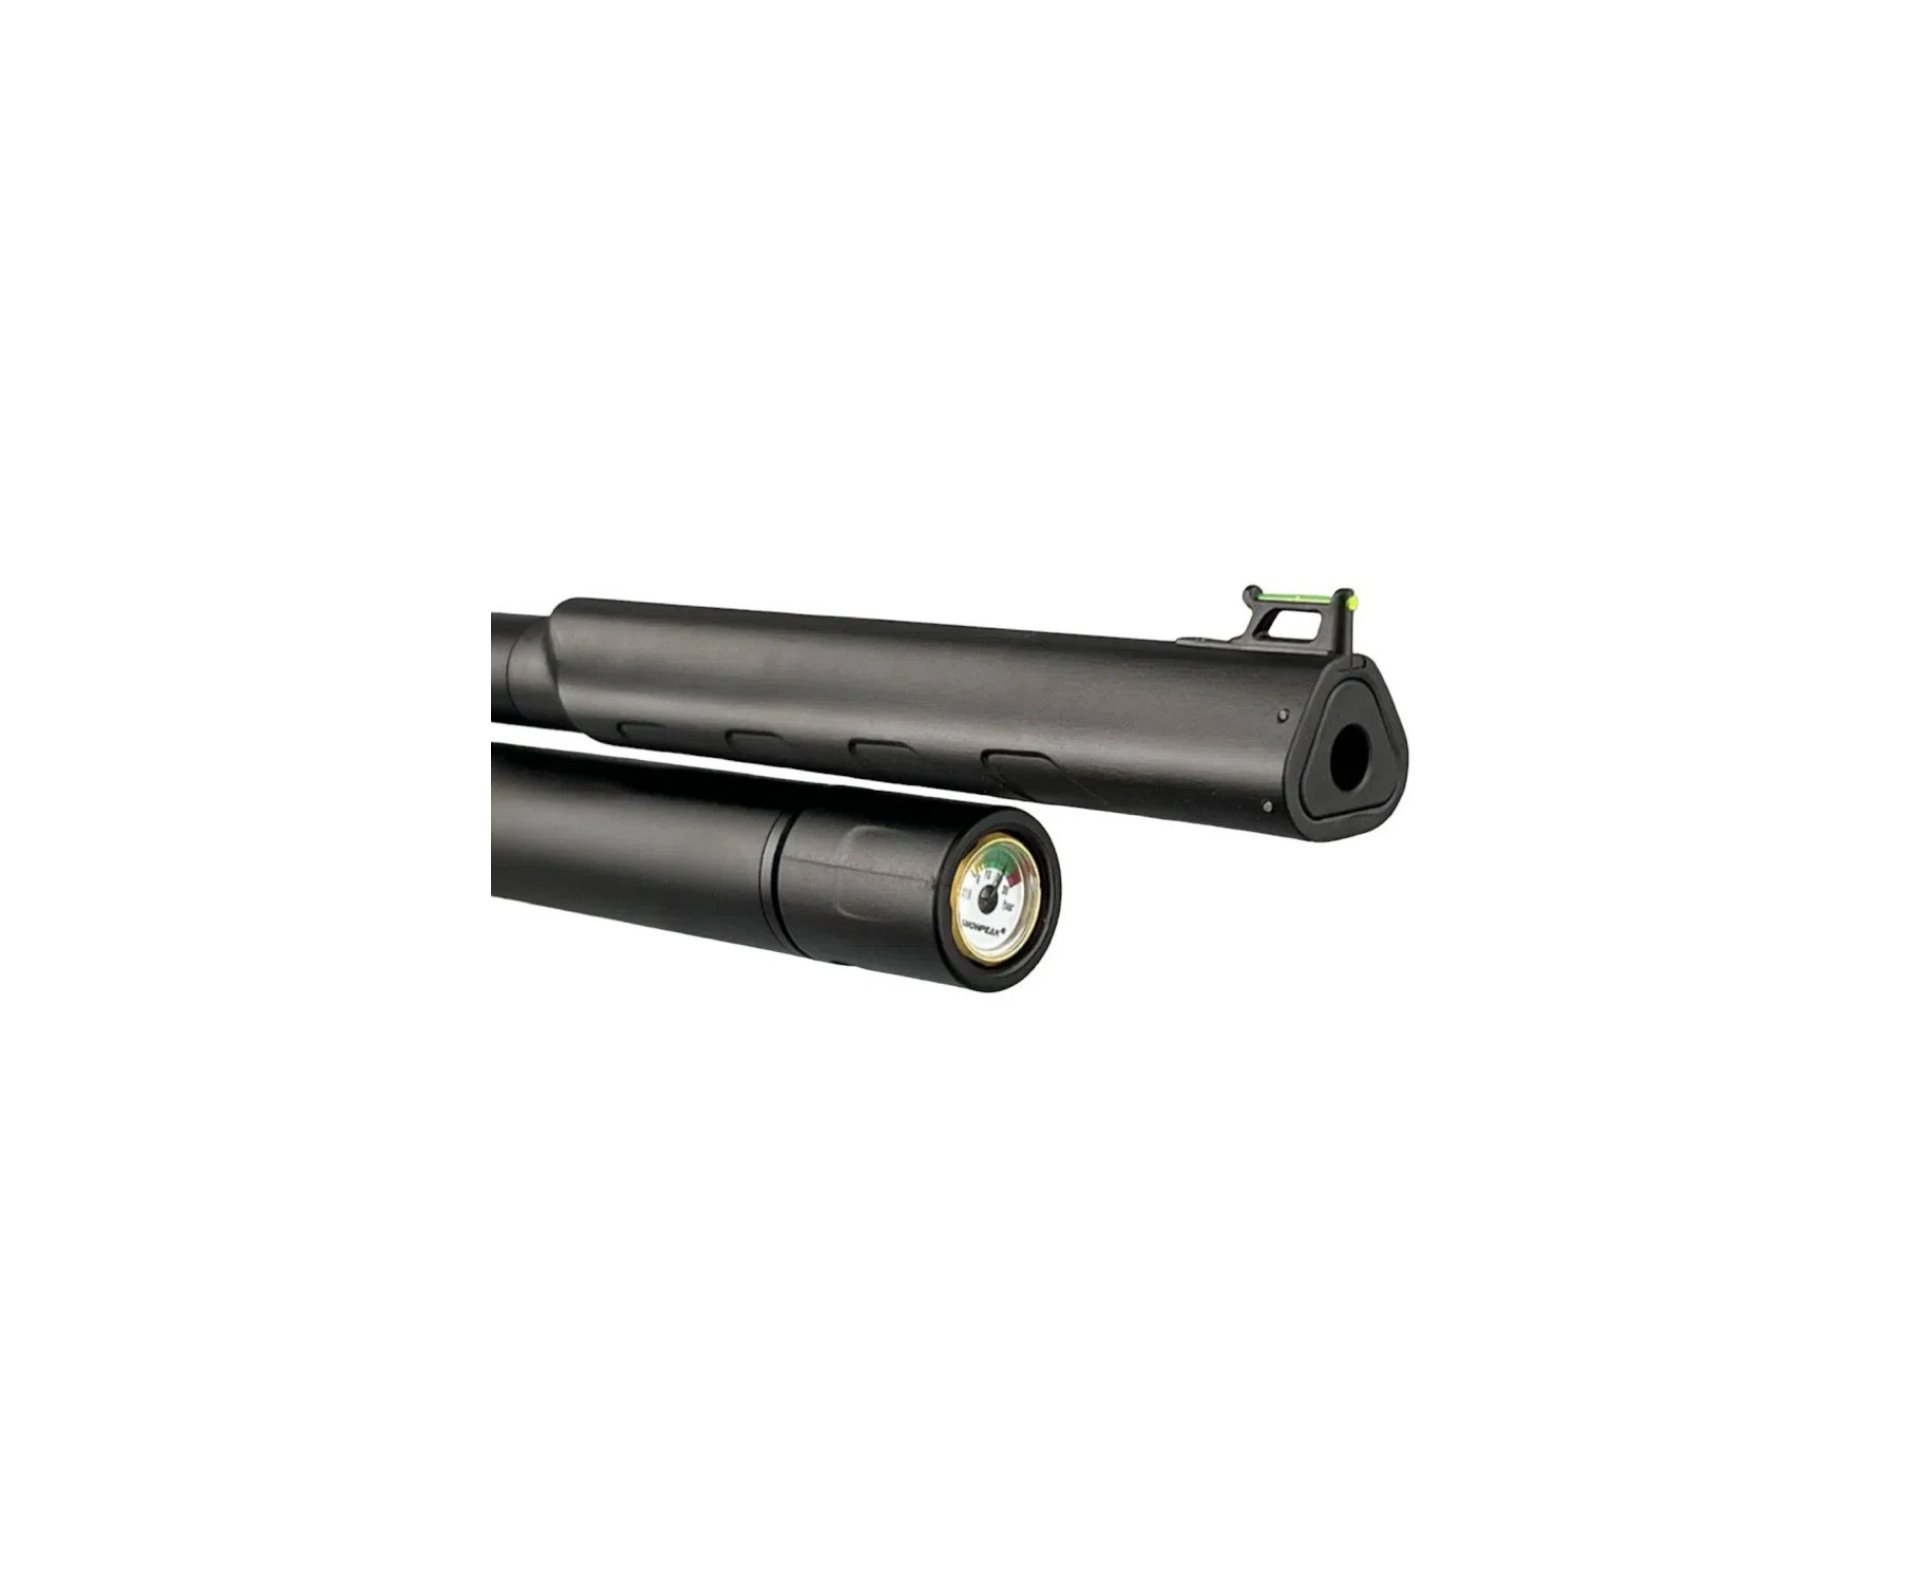 Carabina de Pressão PCP Artemis T-REX 5.5mm com Válvula Reguladora - Fixxar + Bomba + Luneta 4-16x50 + Mount 22mm + Case